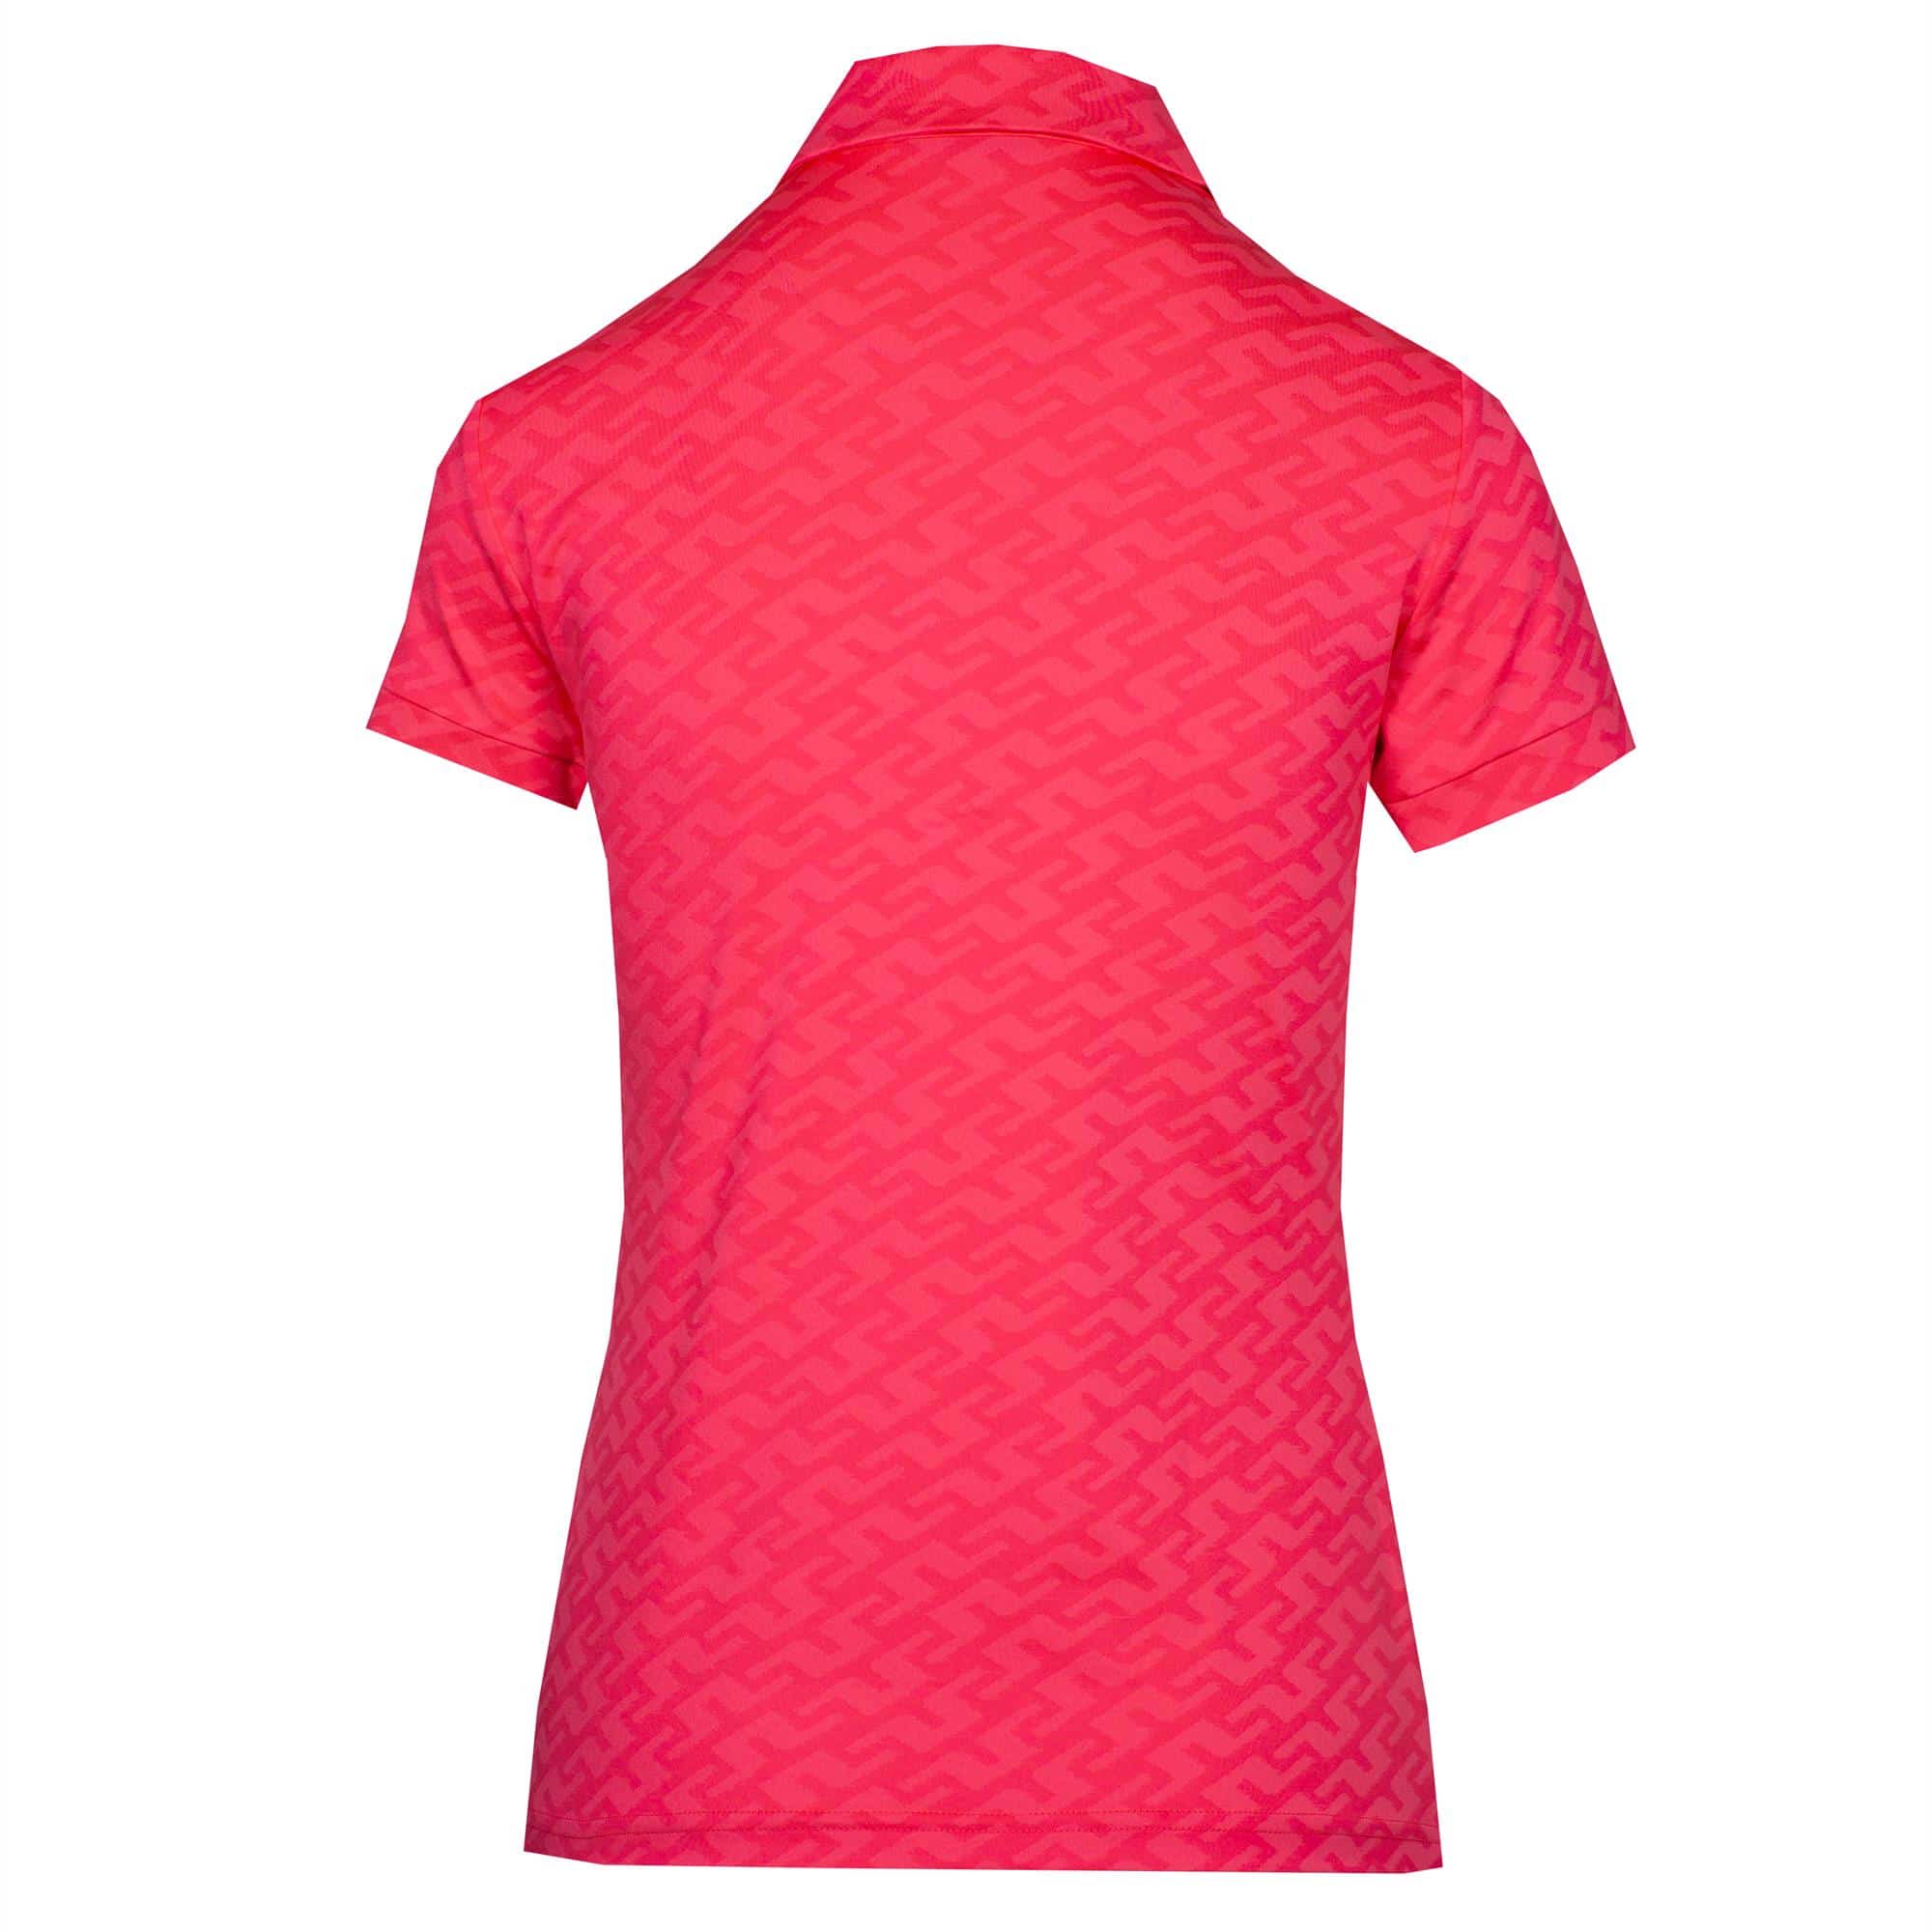 J Lindeberg Alaya Jacquard Ladies Golf Polo Shirt Pink Bridge Monogram